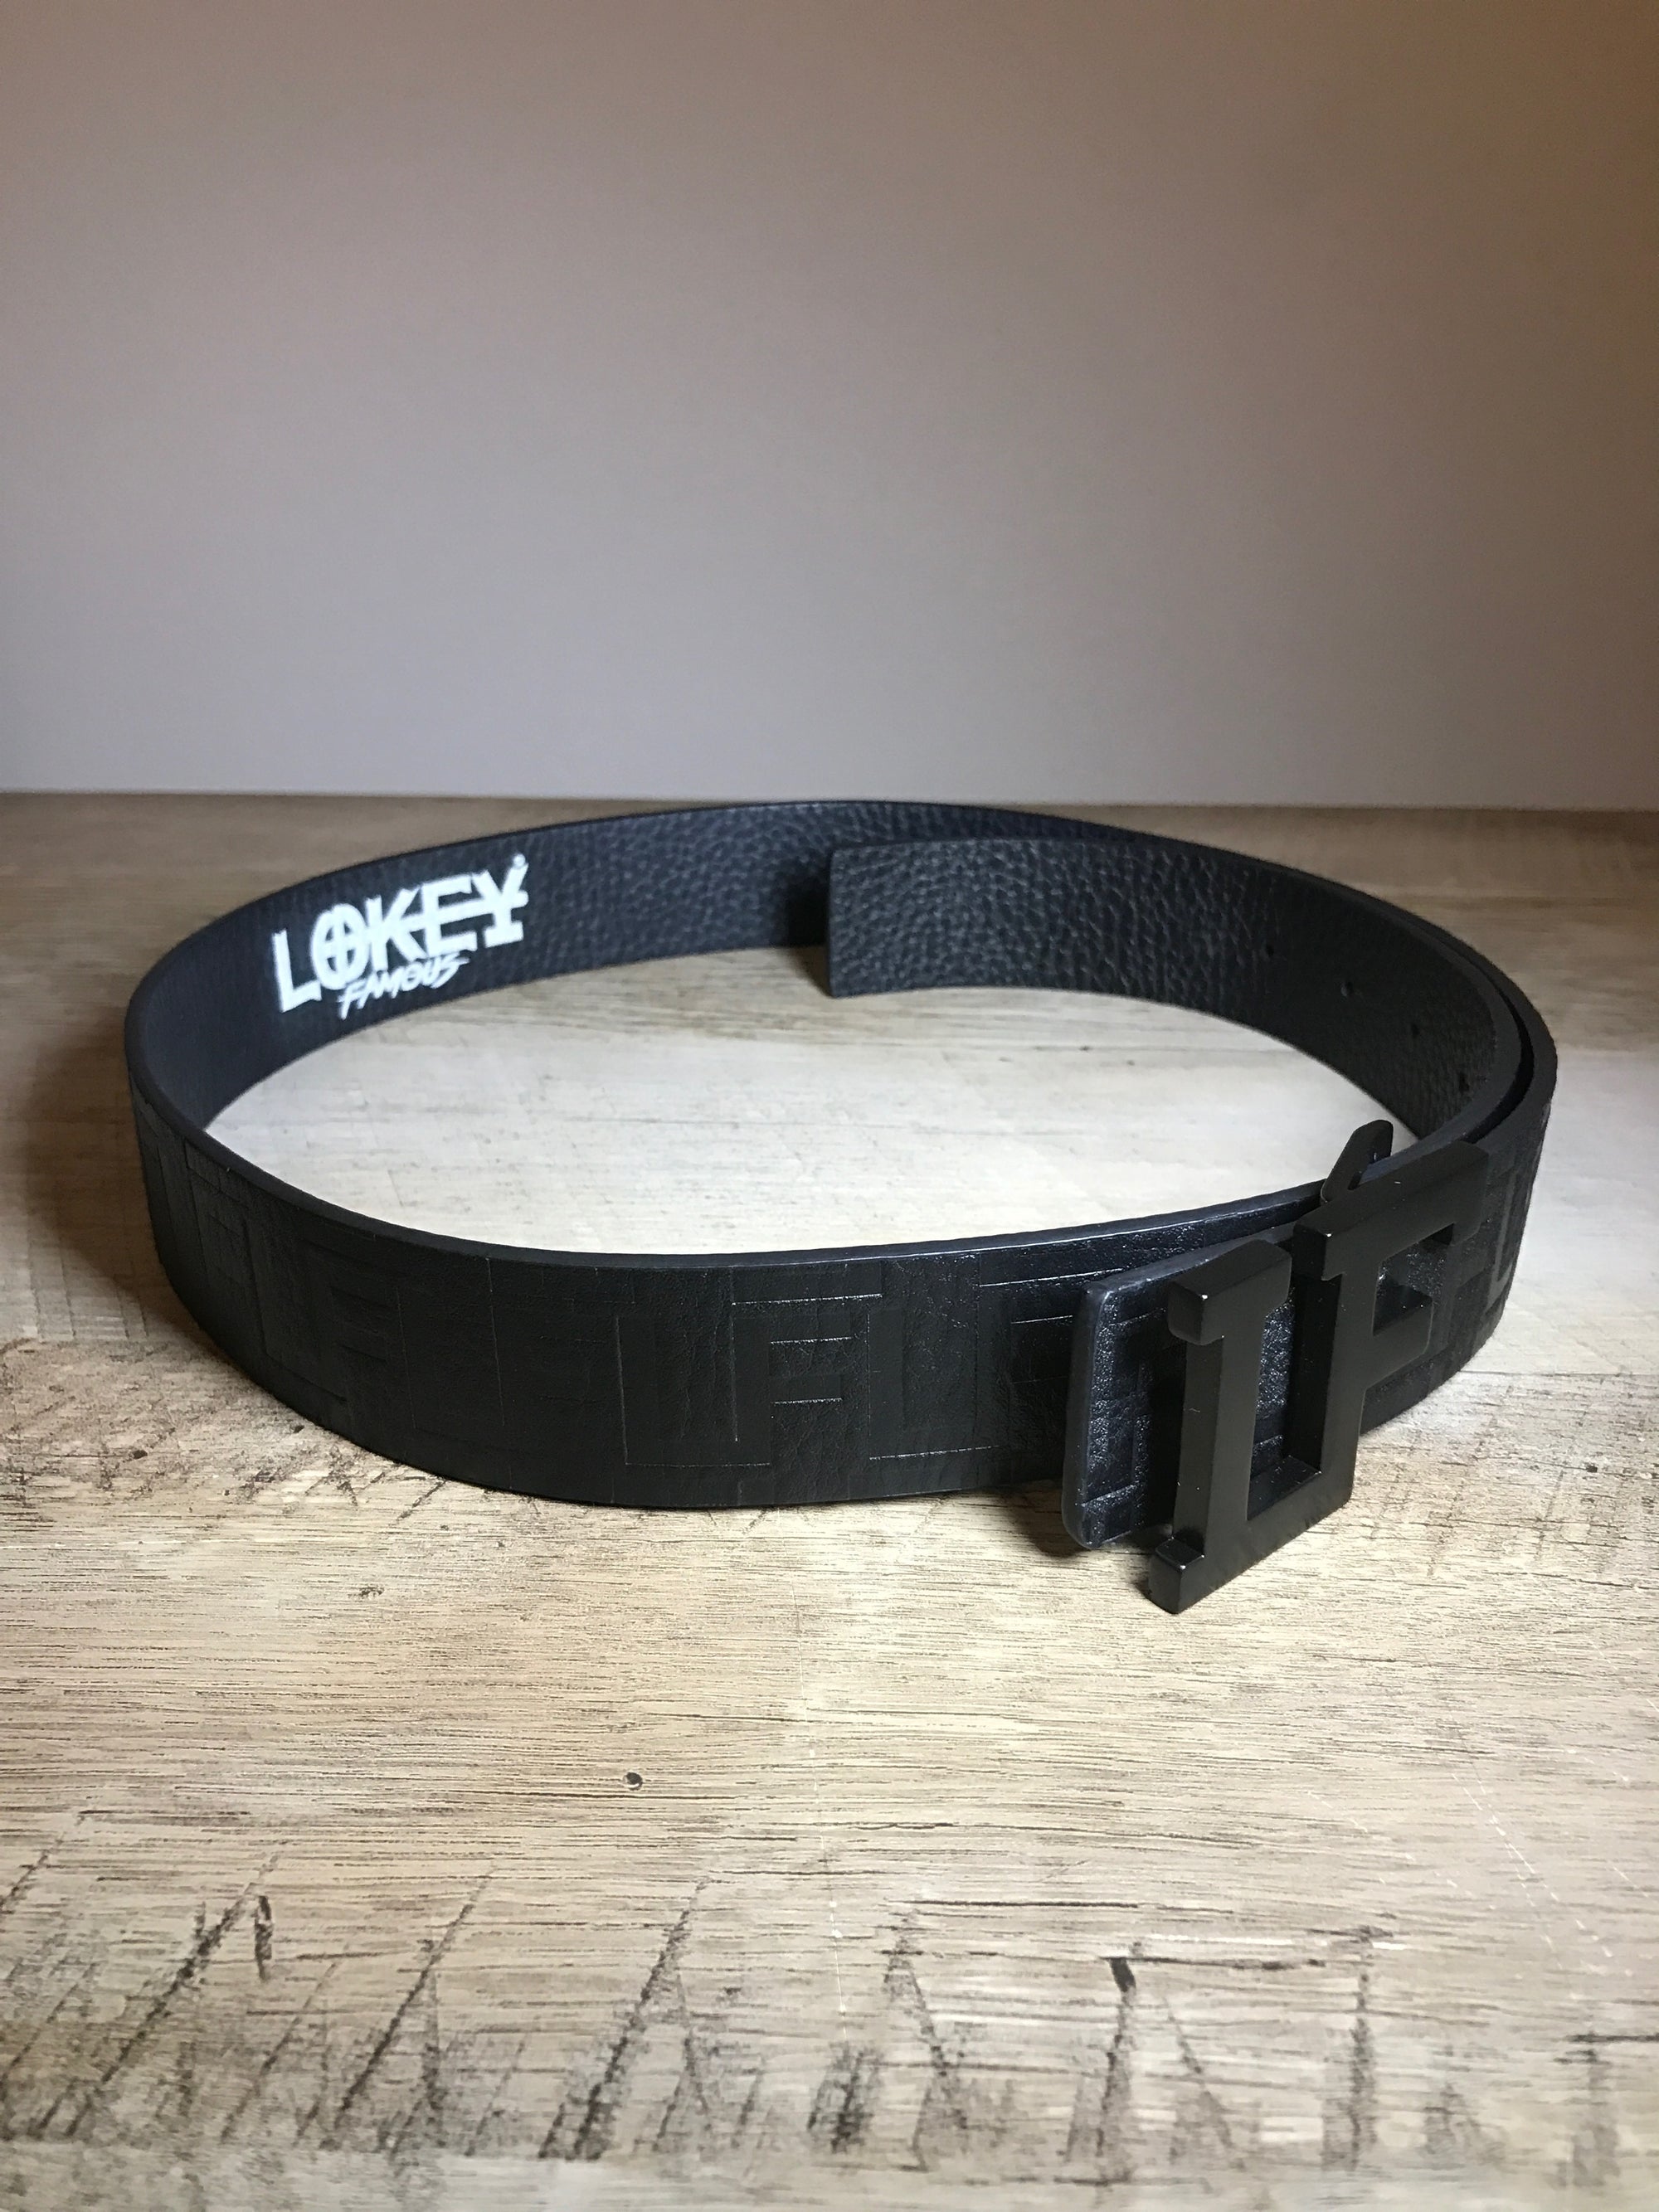 Lokey Famous Designer Belt (black w/black buckle)